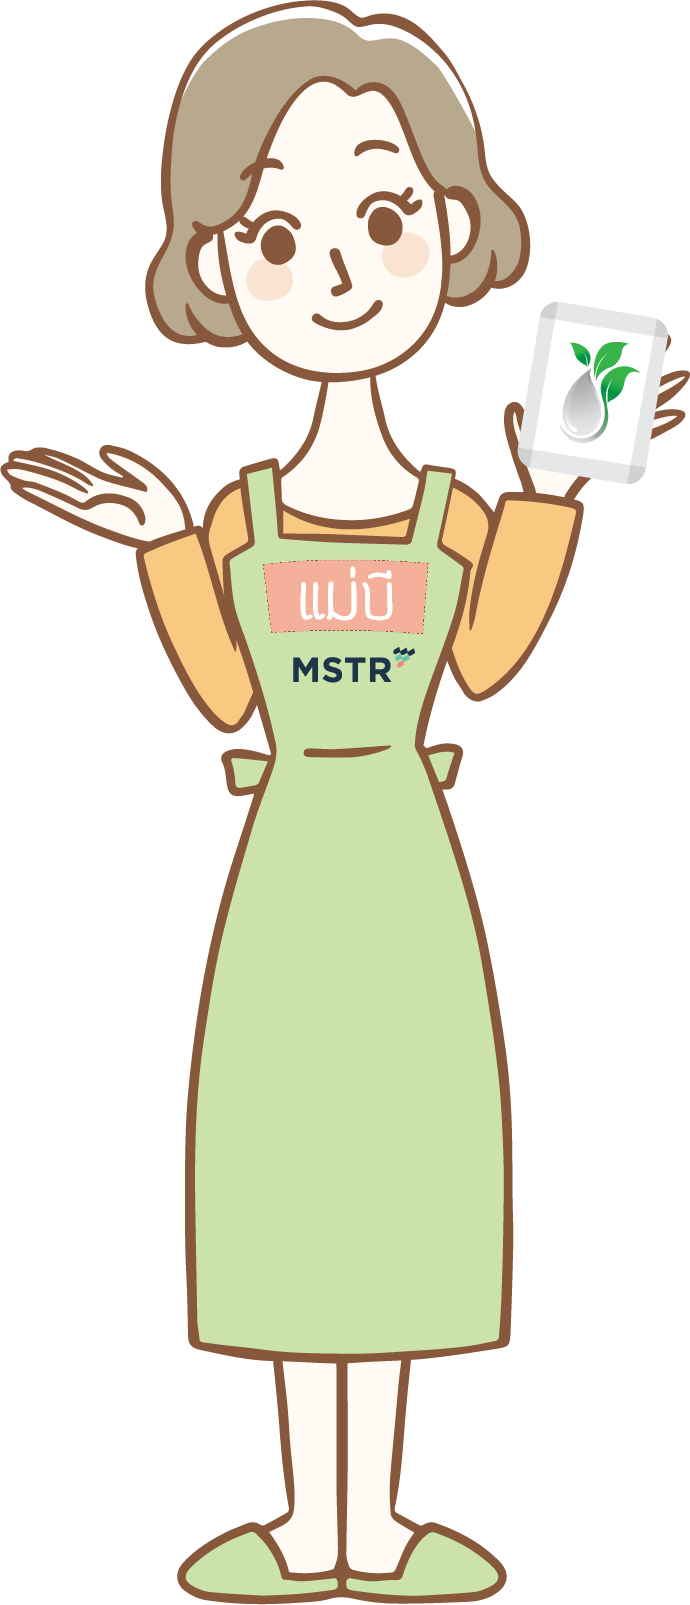 แม่บีสวมผ้ากันเปื้อนสีส้มลาย MSTR ยืนถือซองผงล้างผักบีเคลีย